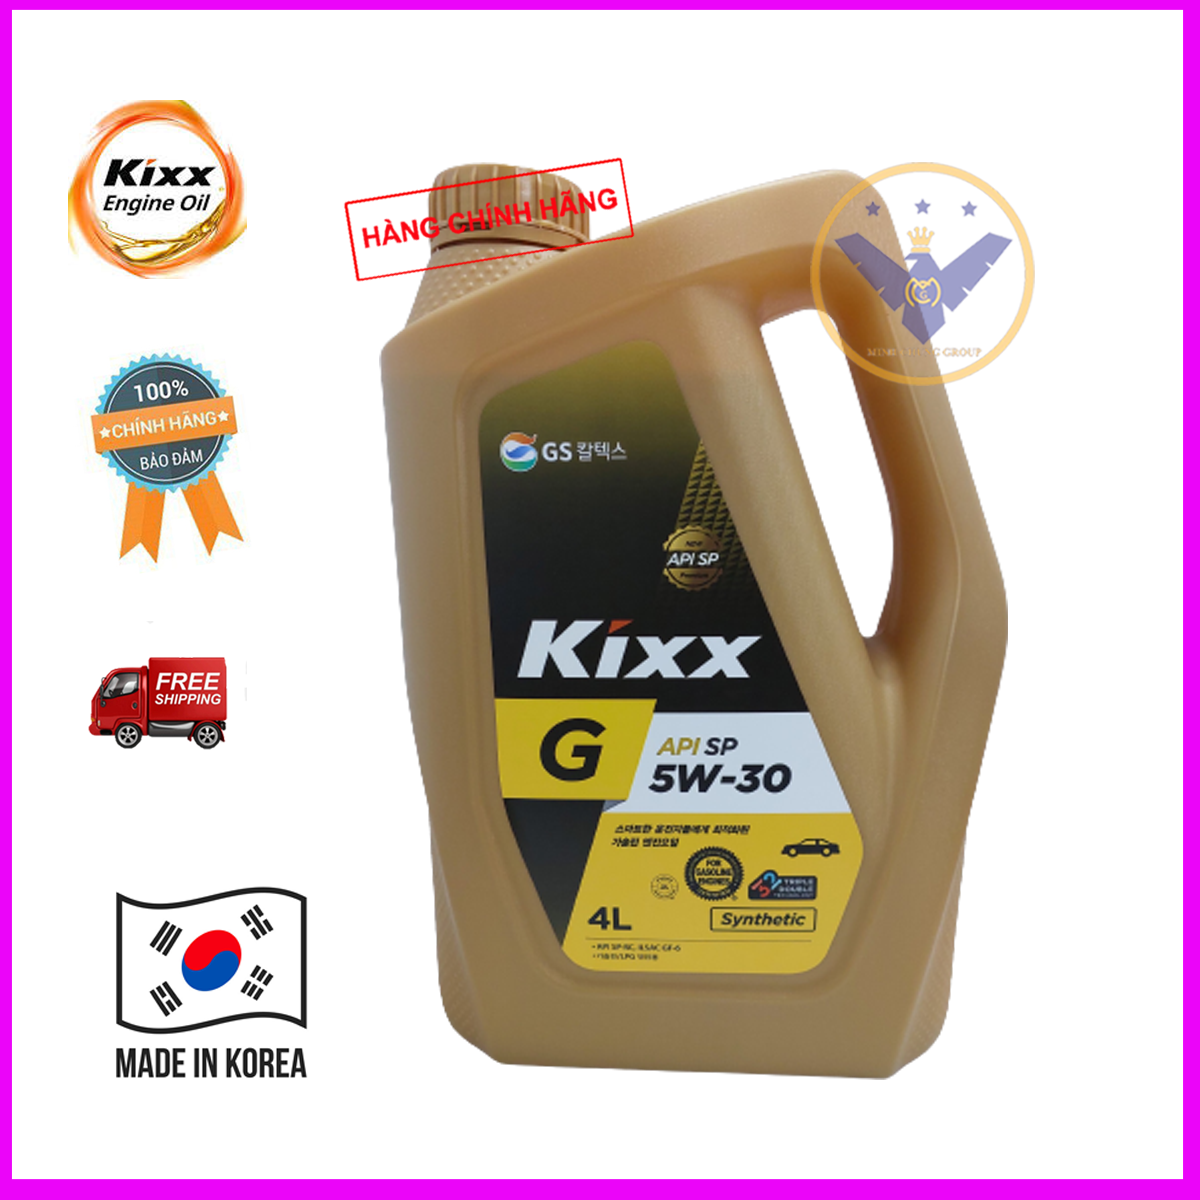 Dầu nhớt ô tô tổng hợp Kixx G API SP 5W30 Hàn Quốc can 4L